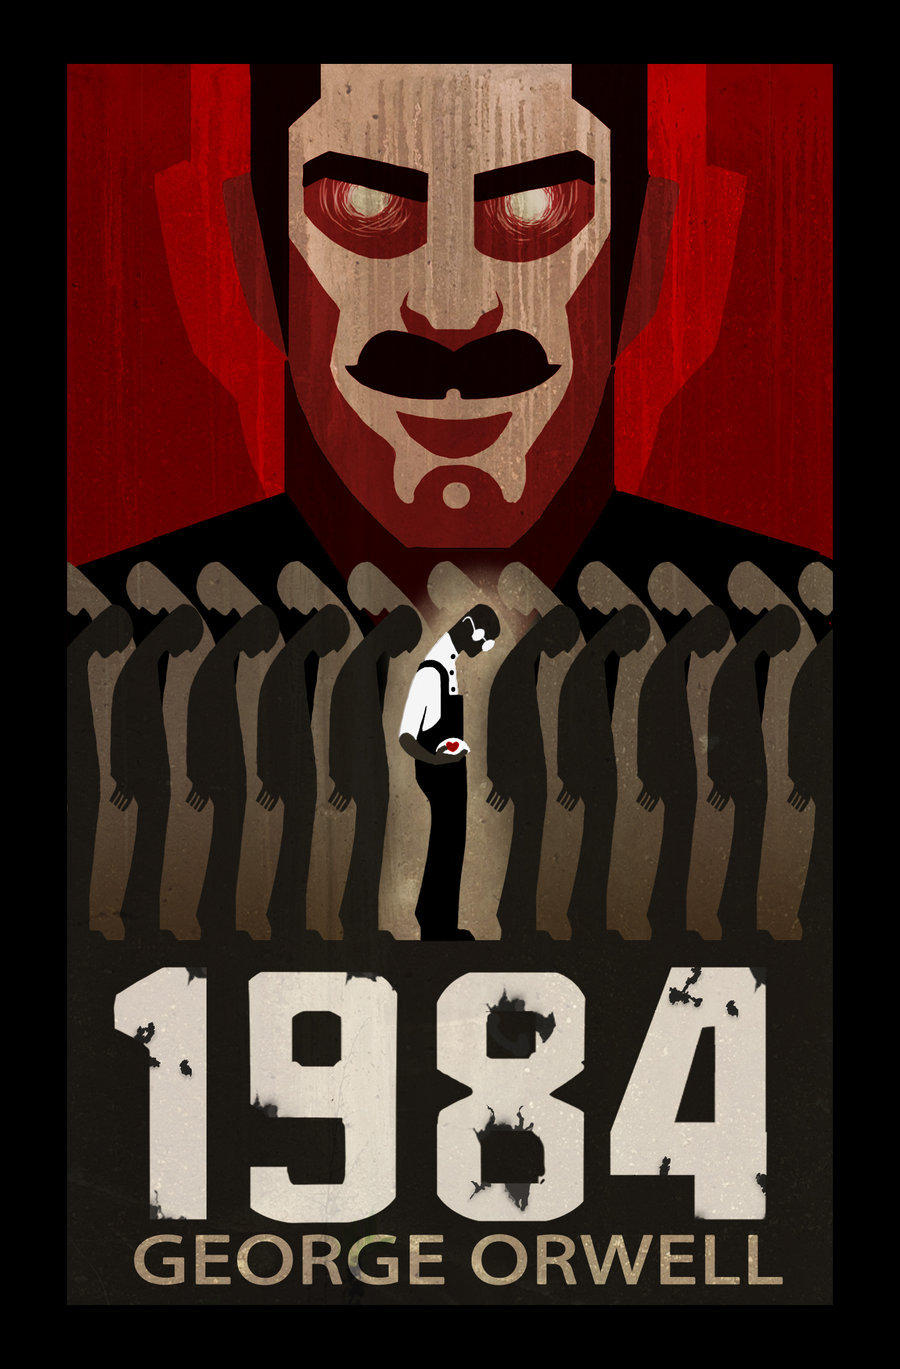 1984 (George Orwell, 1948)